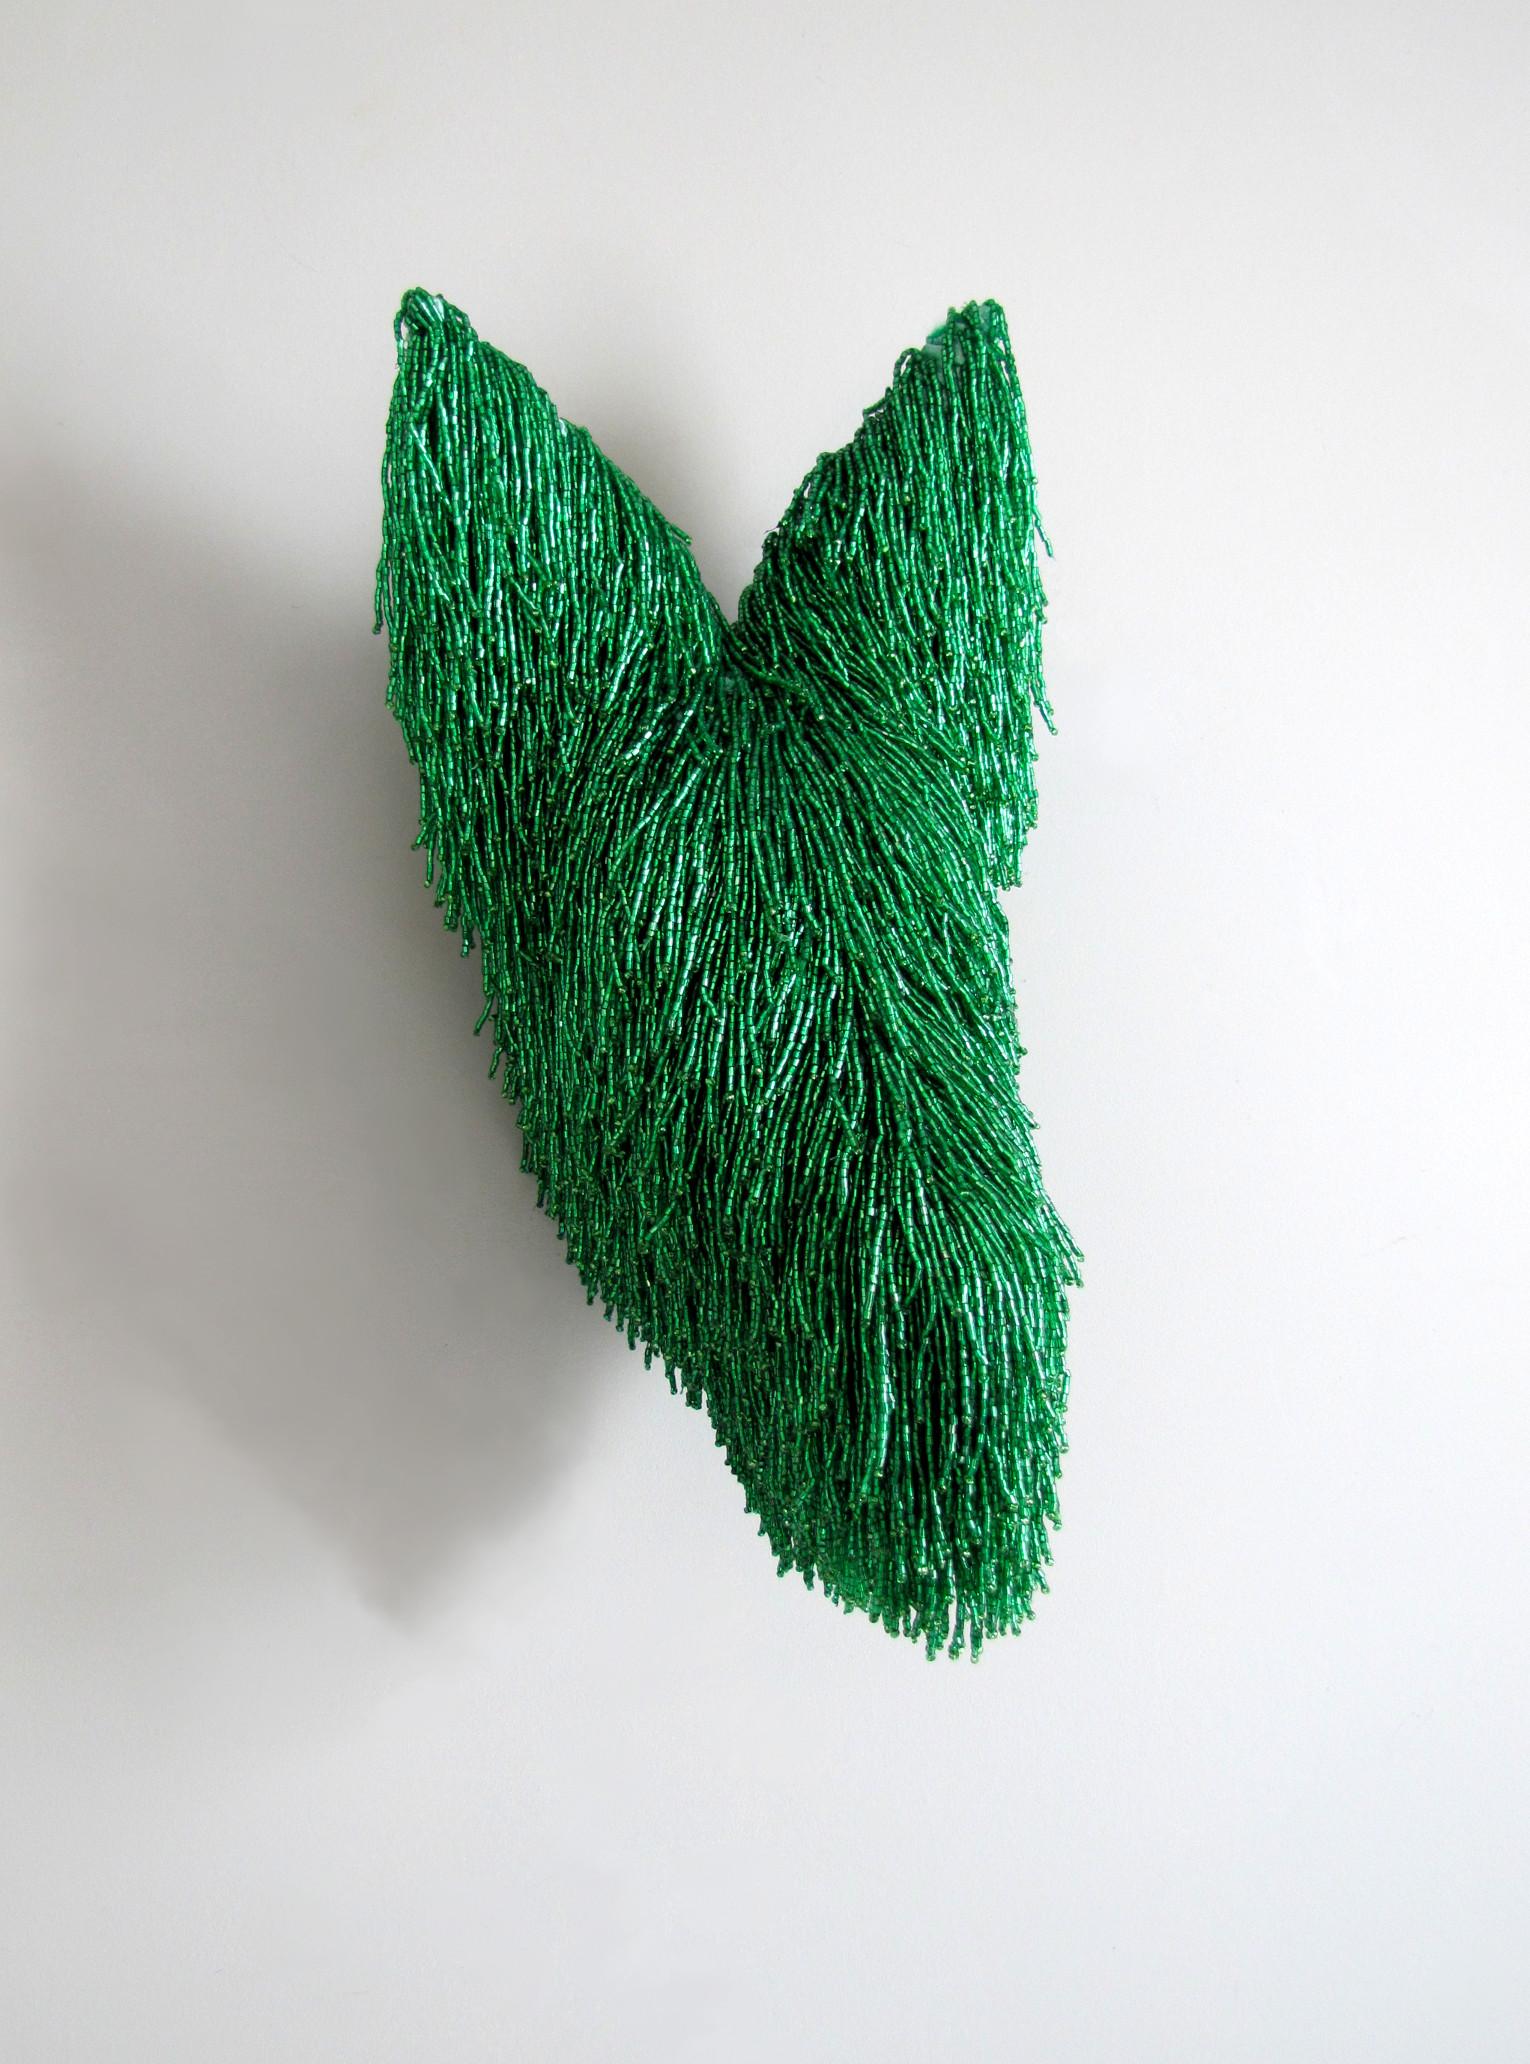 Rachel Denny Abstract Sculpture – Trickster 